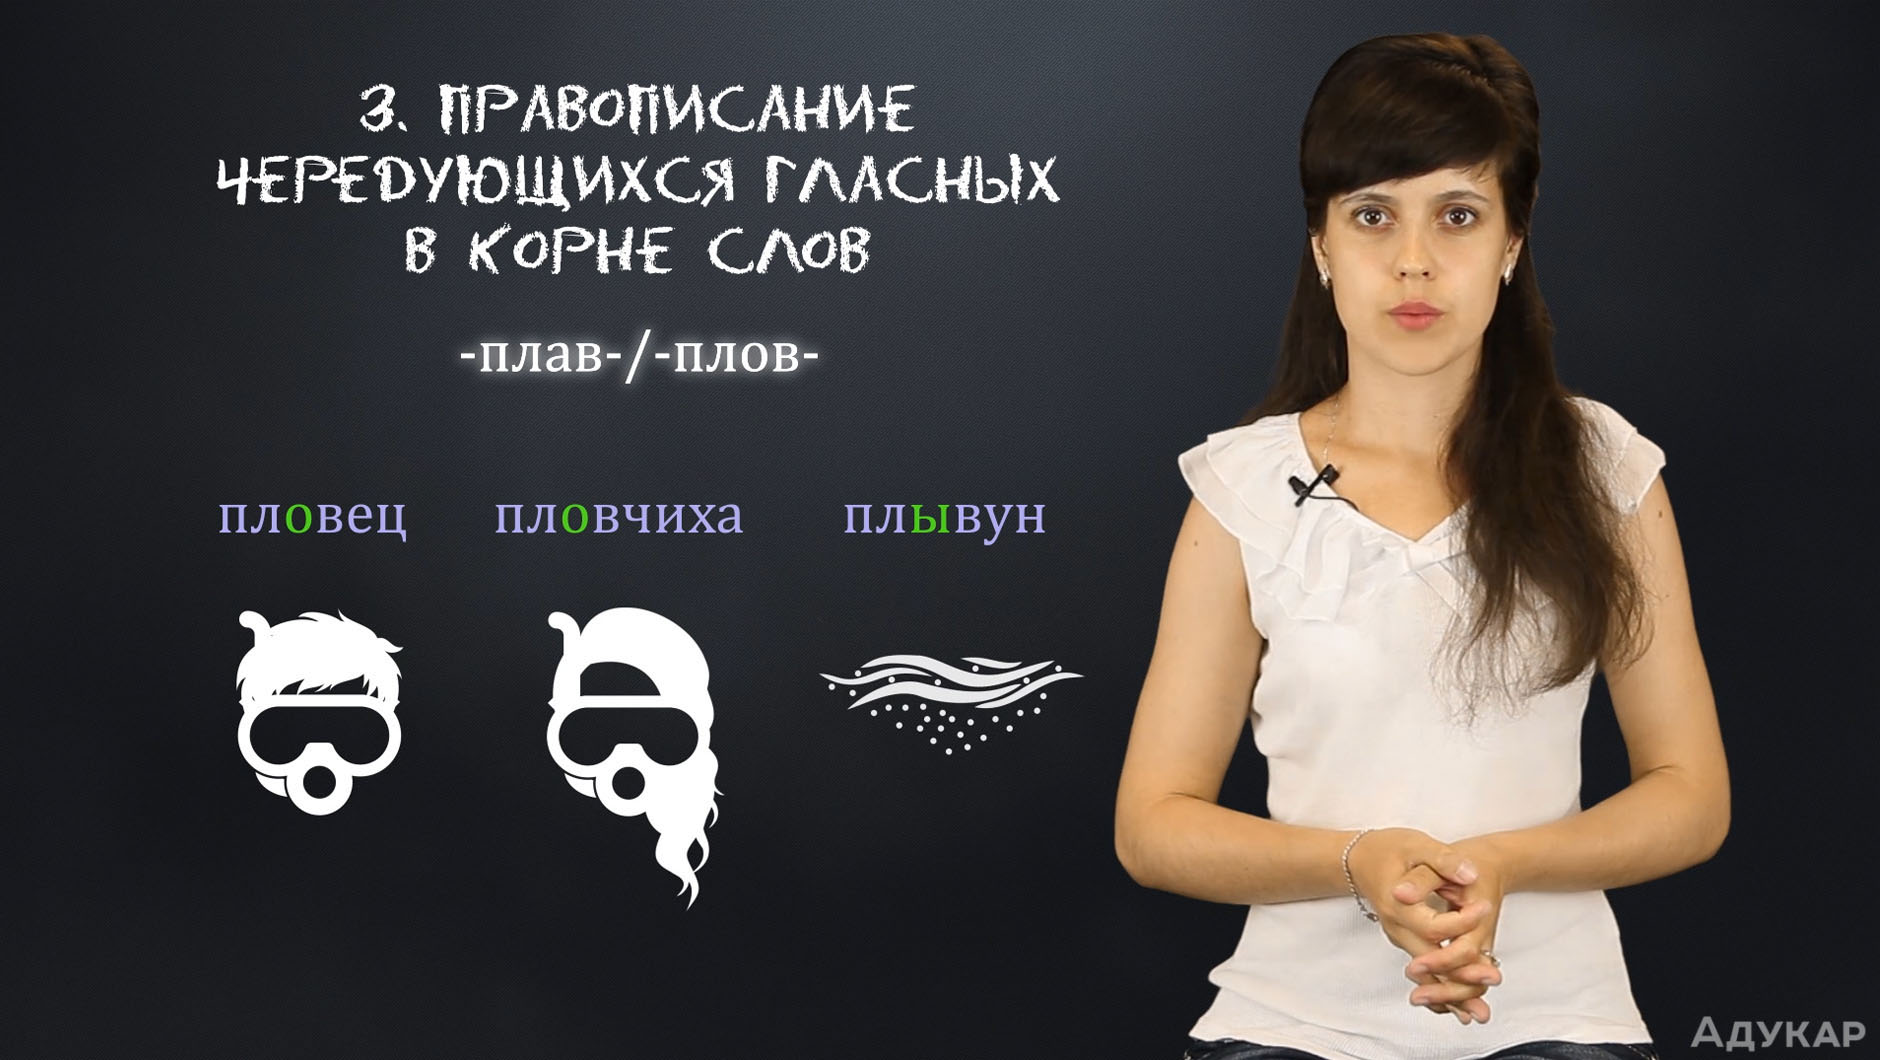 Интерактивный курс русского языка от Адукар рассчитан на самостоятельную подготовку к ЦТ по русскому